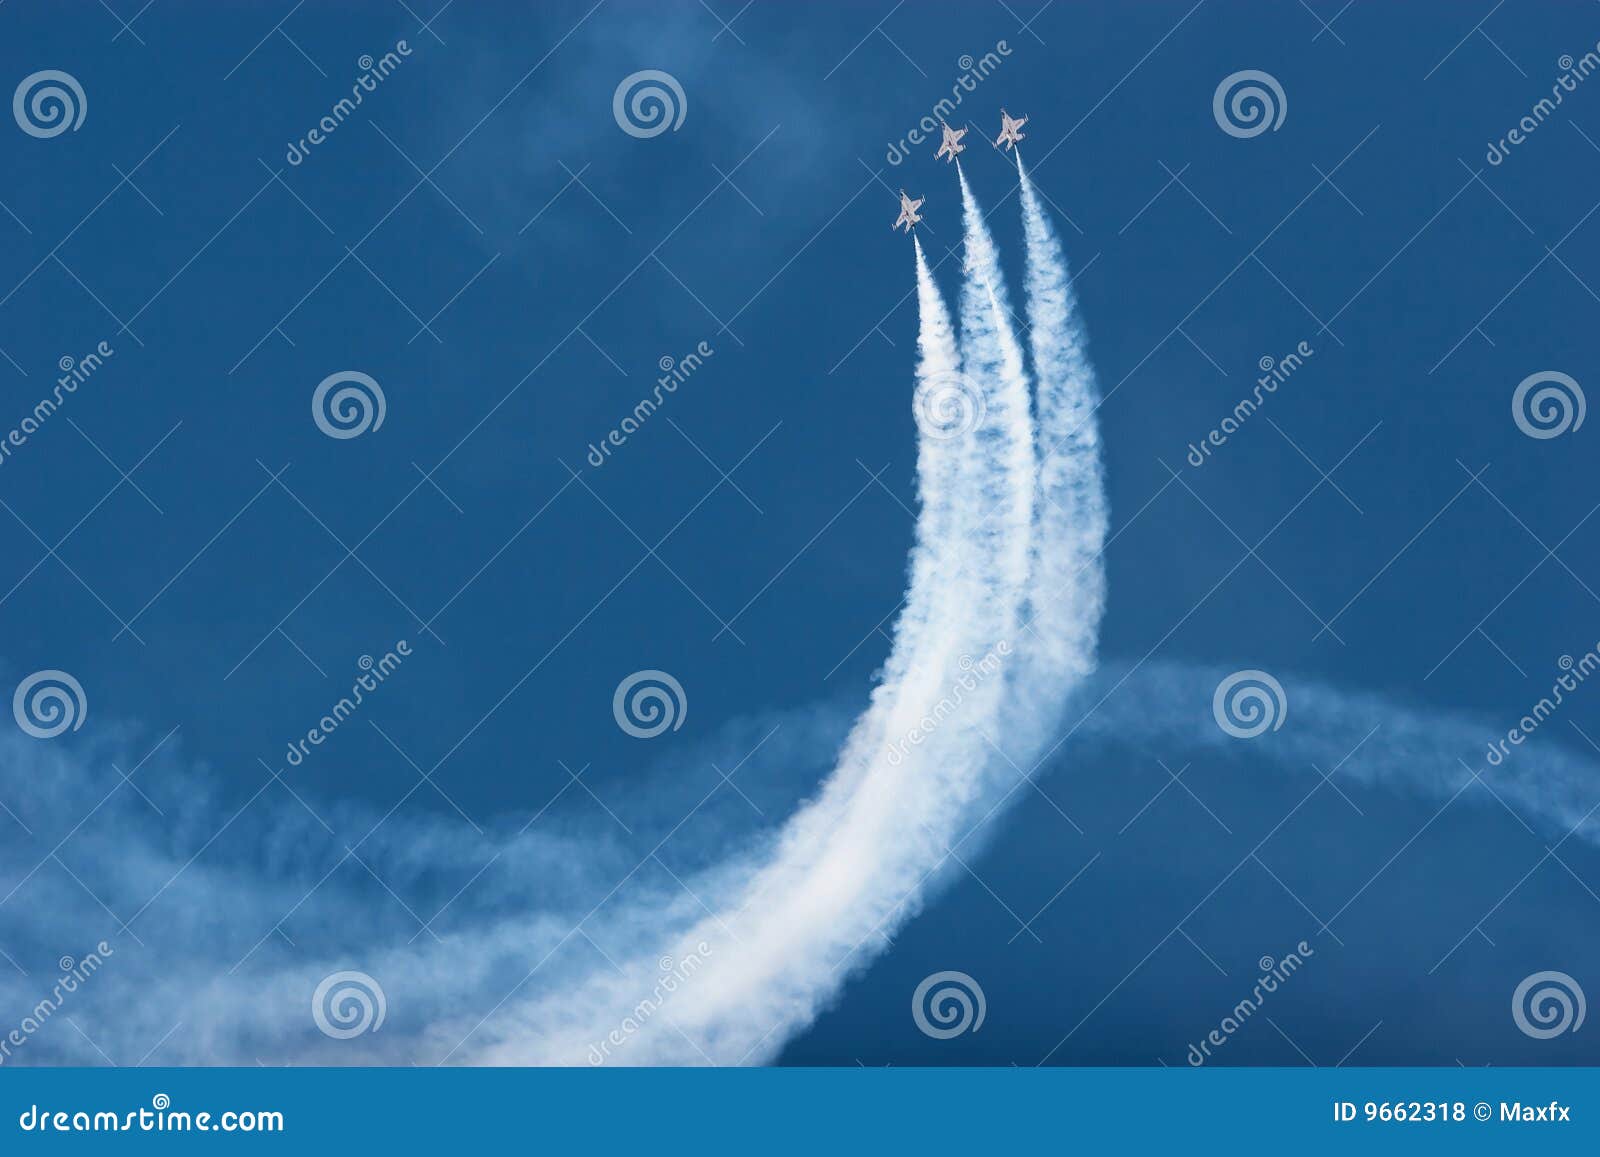 f16 thunderbird planes at airshow